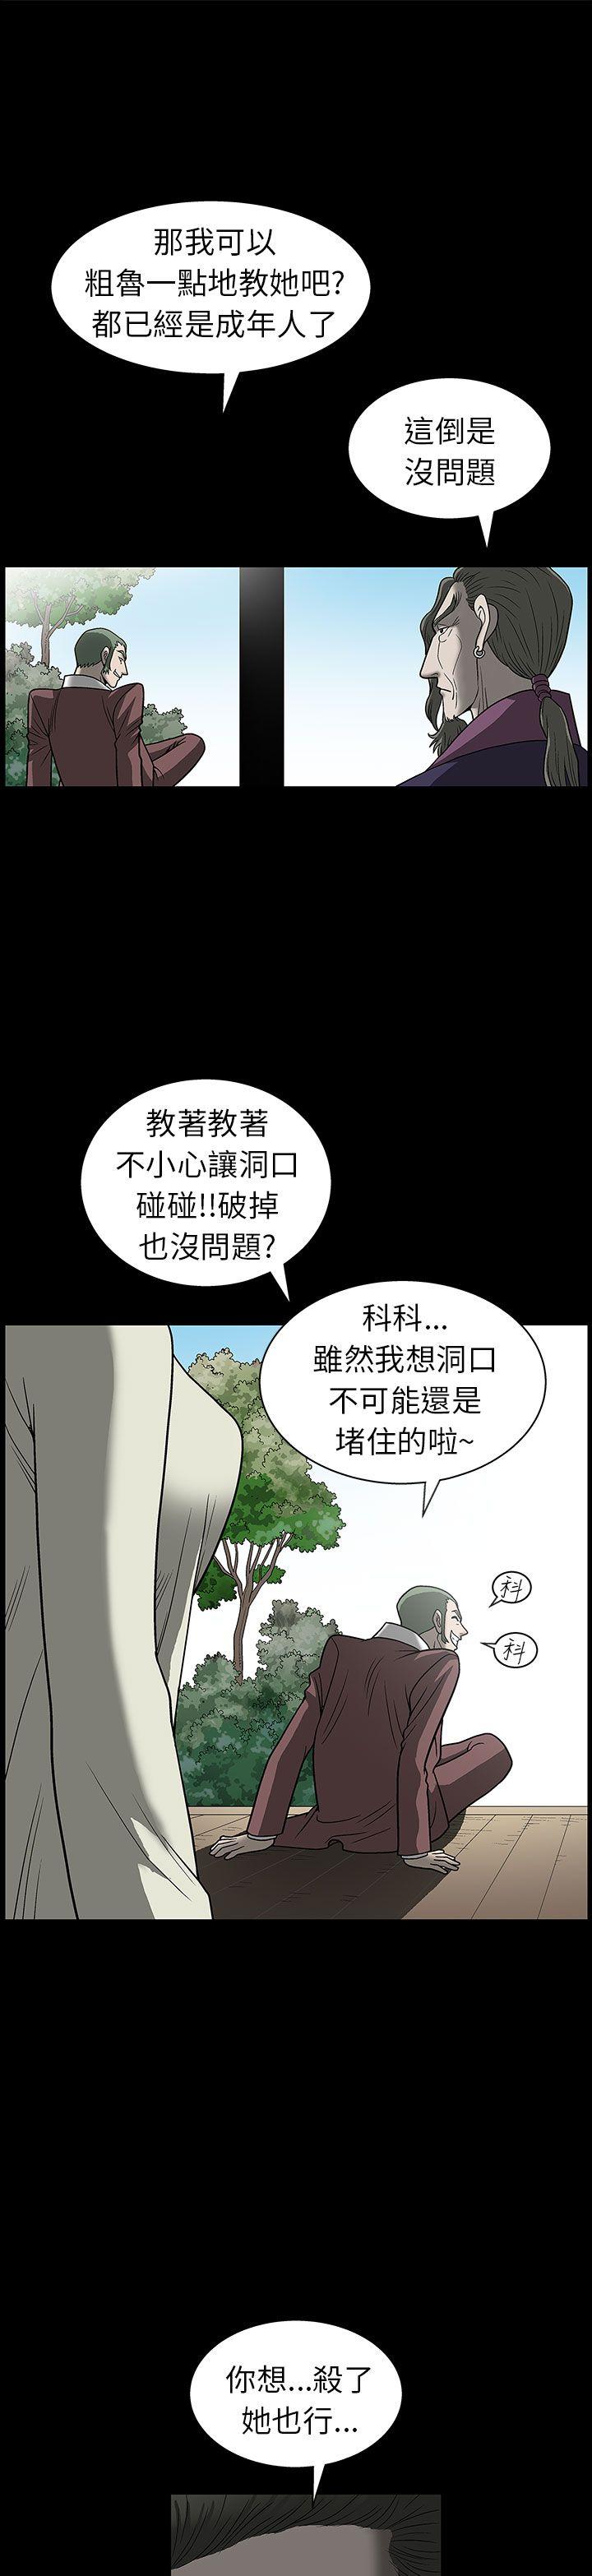 韩国污漫画 煦娜 第2话 22